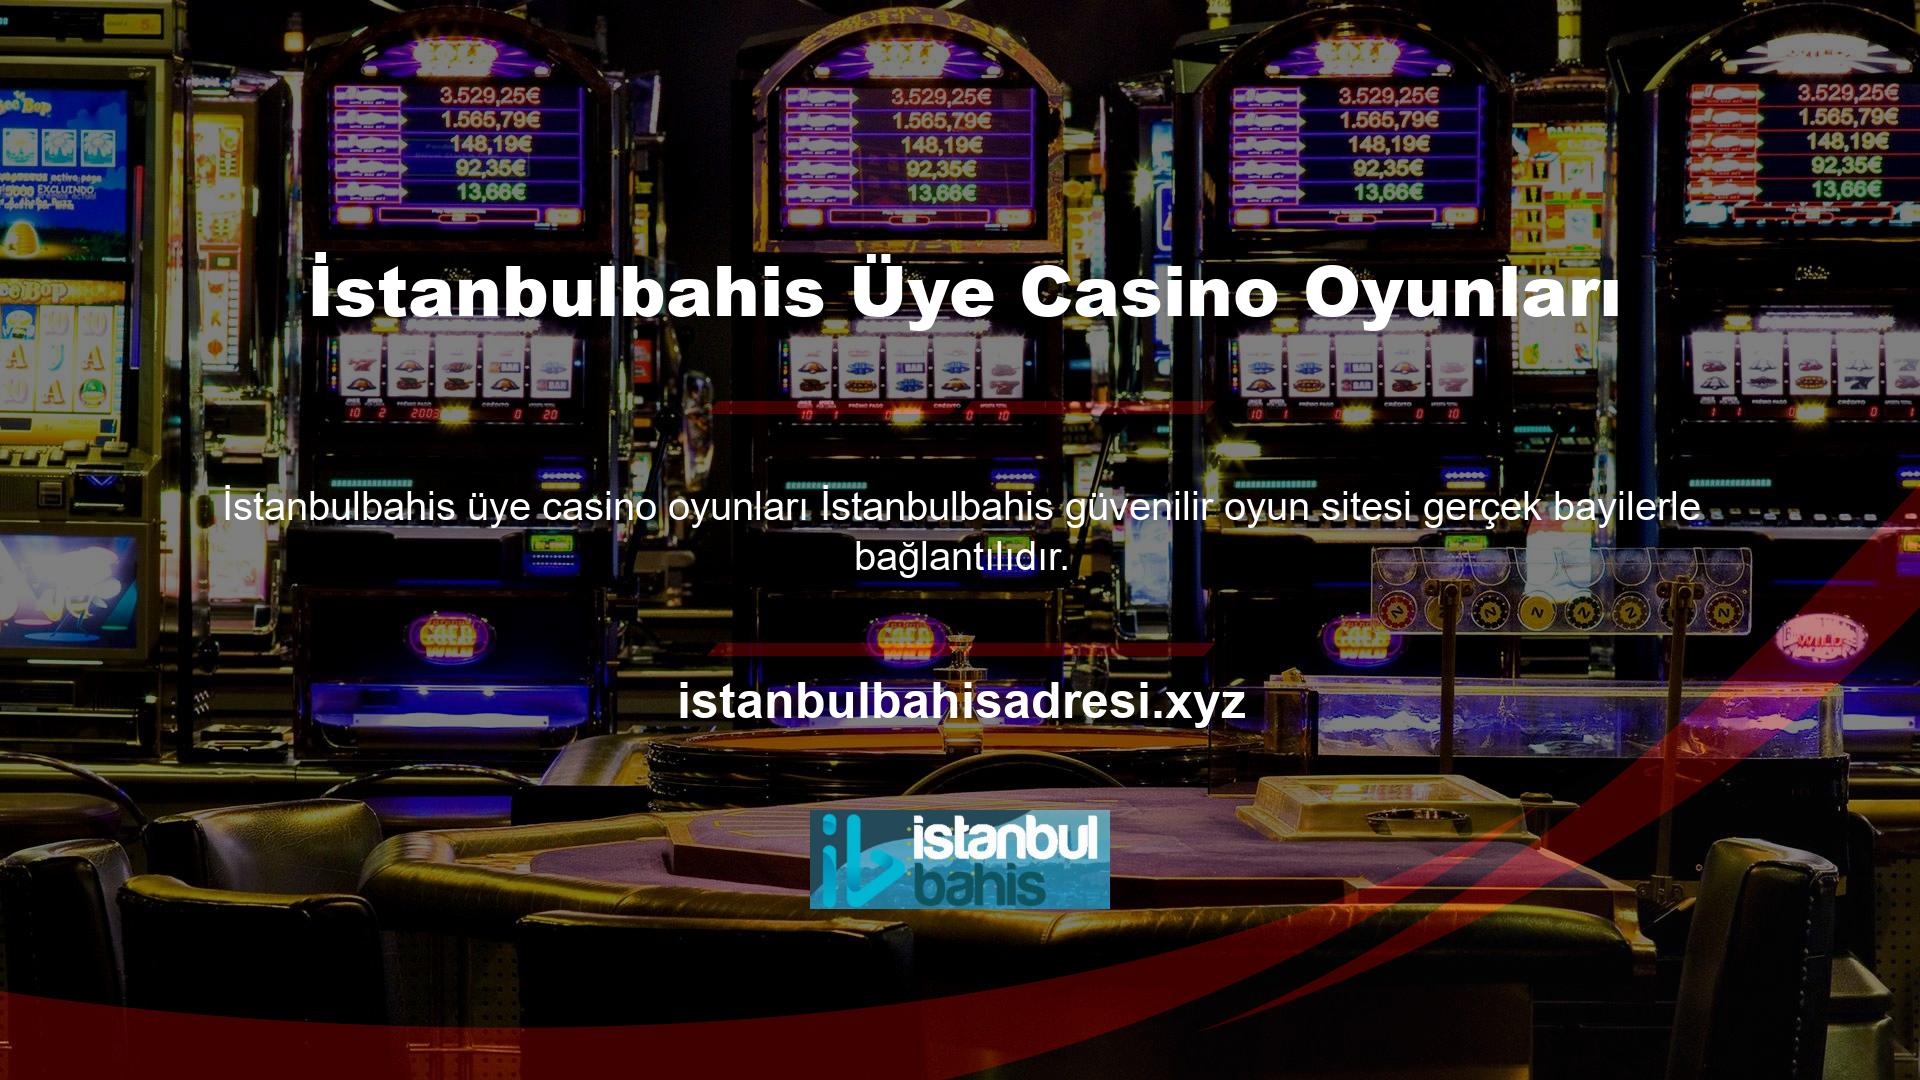 İstanbulbahis Casino oyunlarında krupiyenin rolü oyuncunun casino içerisindeki işlemlerini tamamlamak ve oyunların oynanmasını sağlamaktır